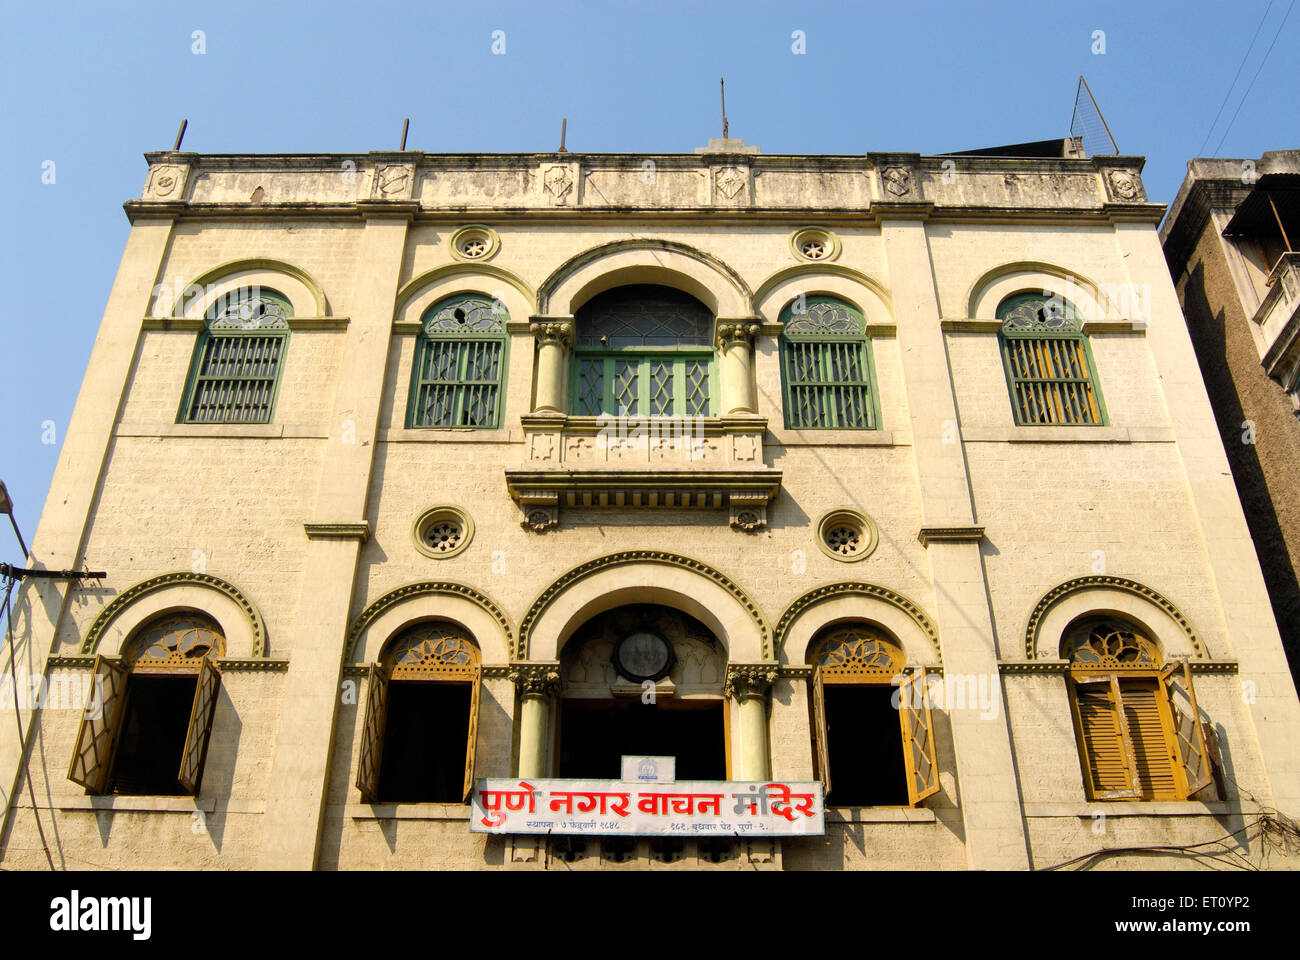 Richly decorated balcony and windows of city library established on 7th February 1848 ; Pune ; Maharashtra ; India Stock Photo